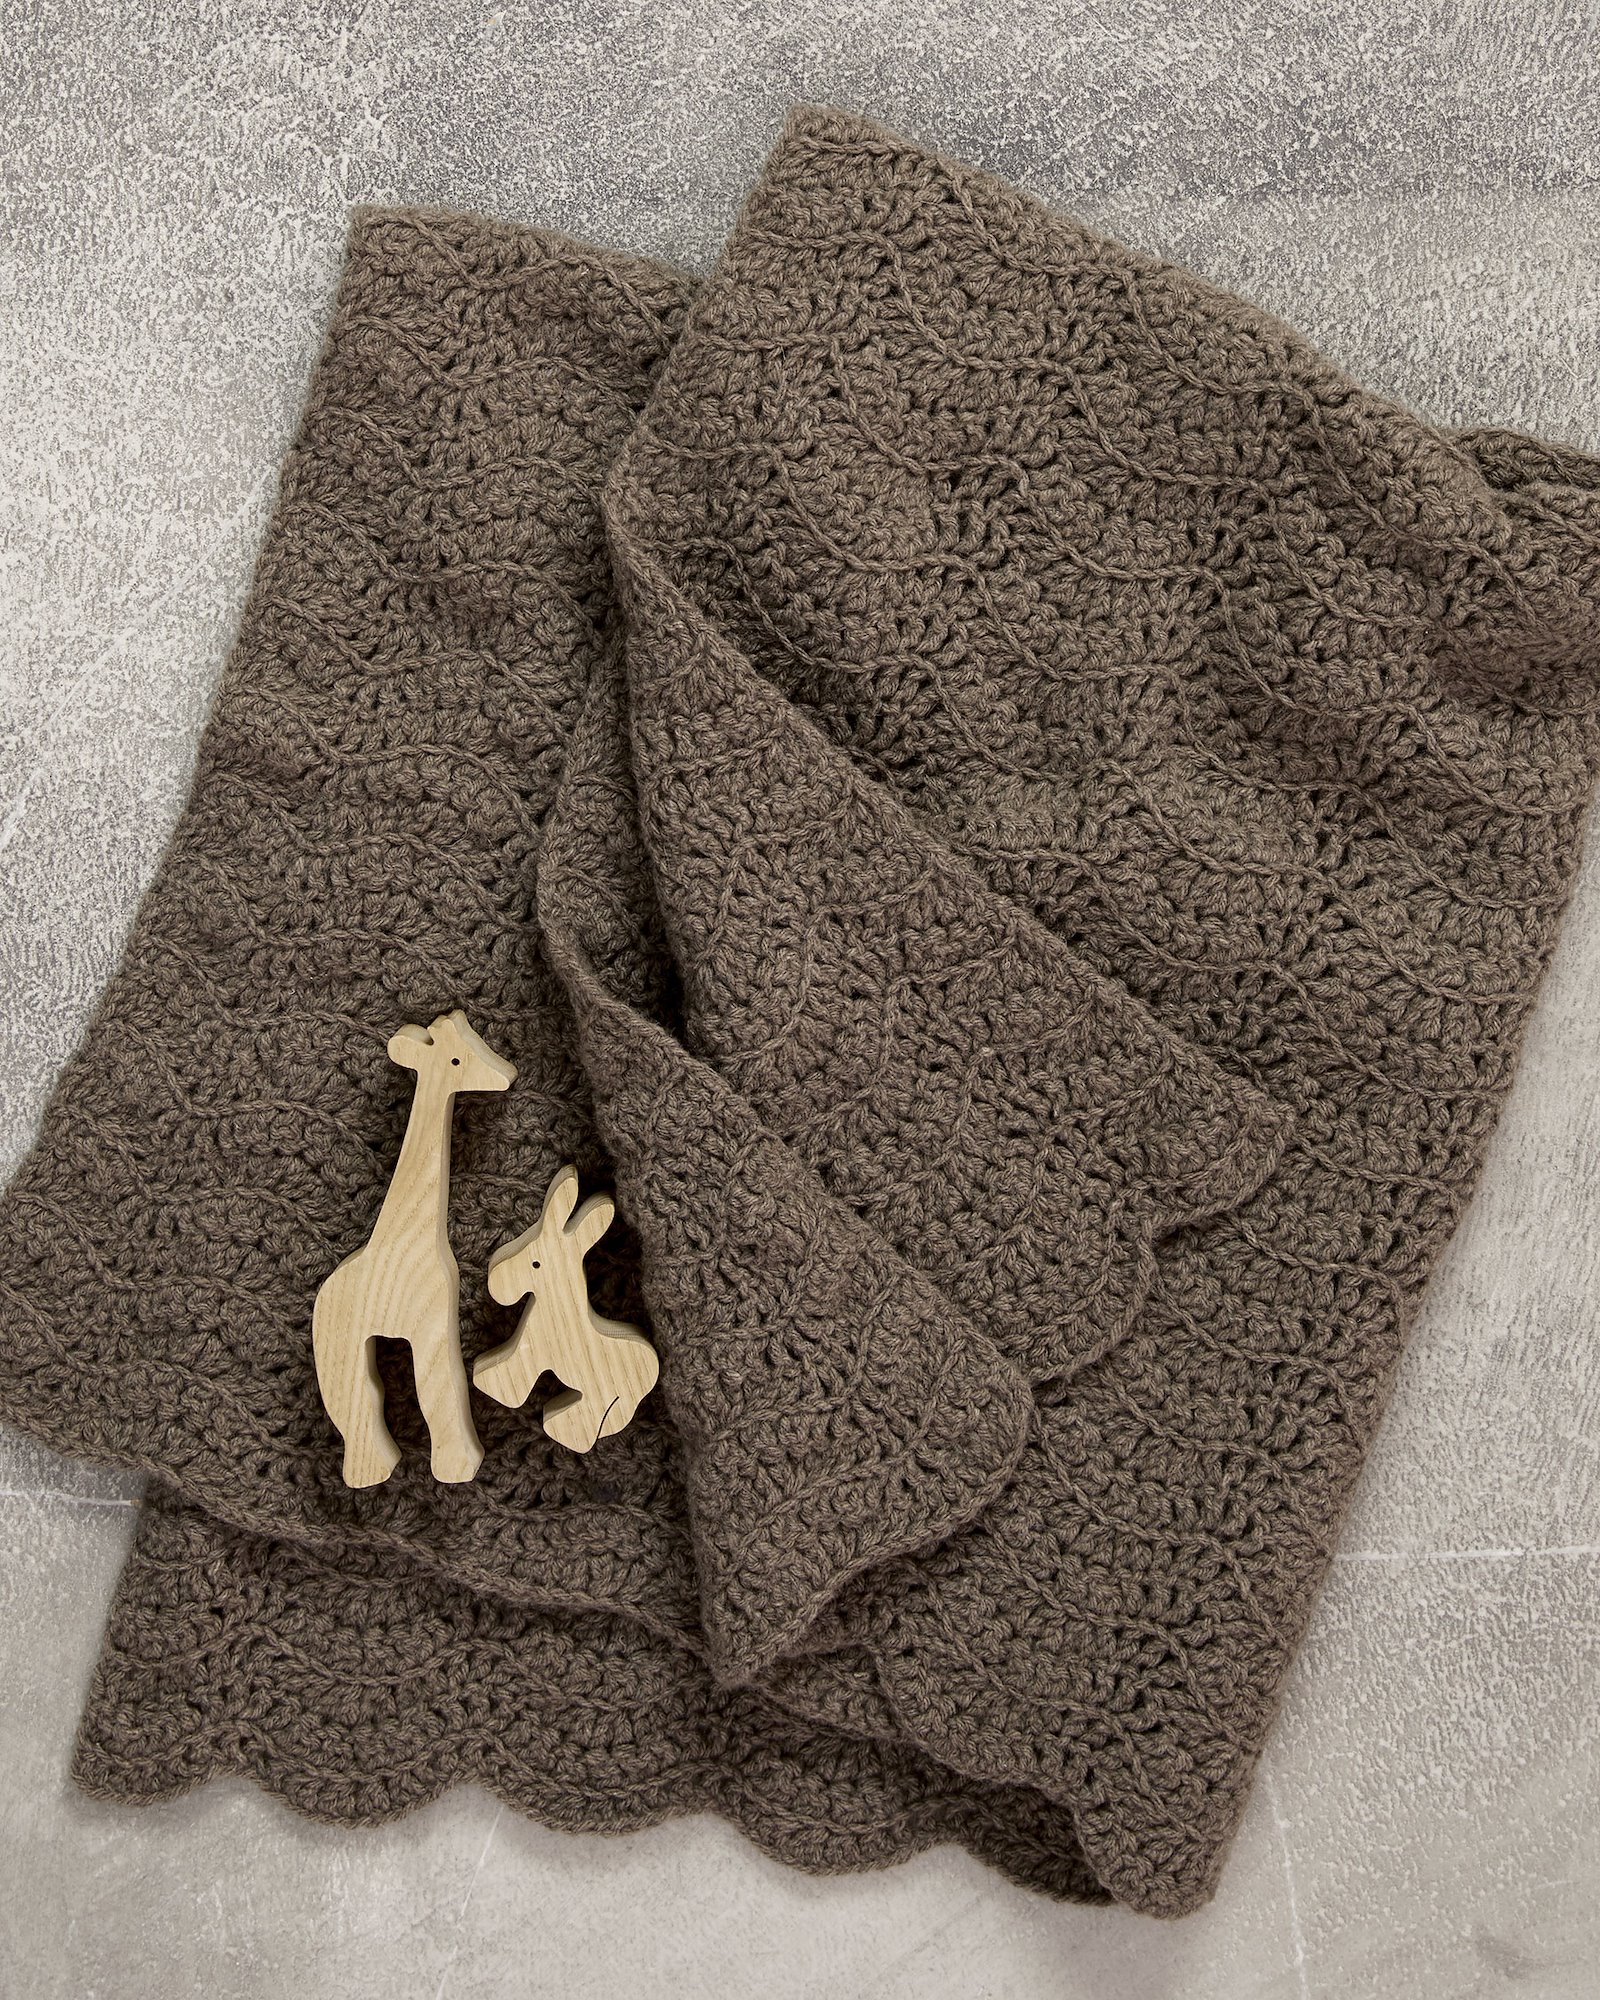 FRAYA hækleopskrift - Snuggle up blanket, boligdekoration - caring version FRAYA9032_image_inriver.jpg